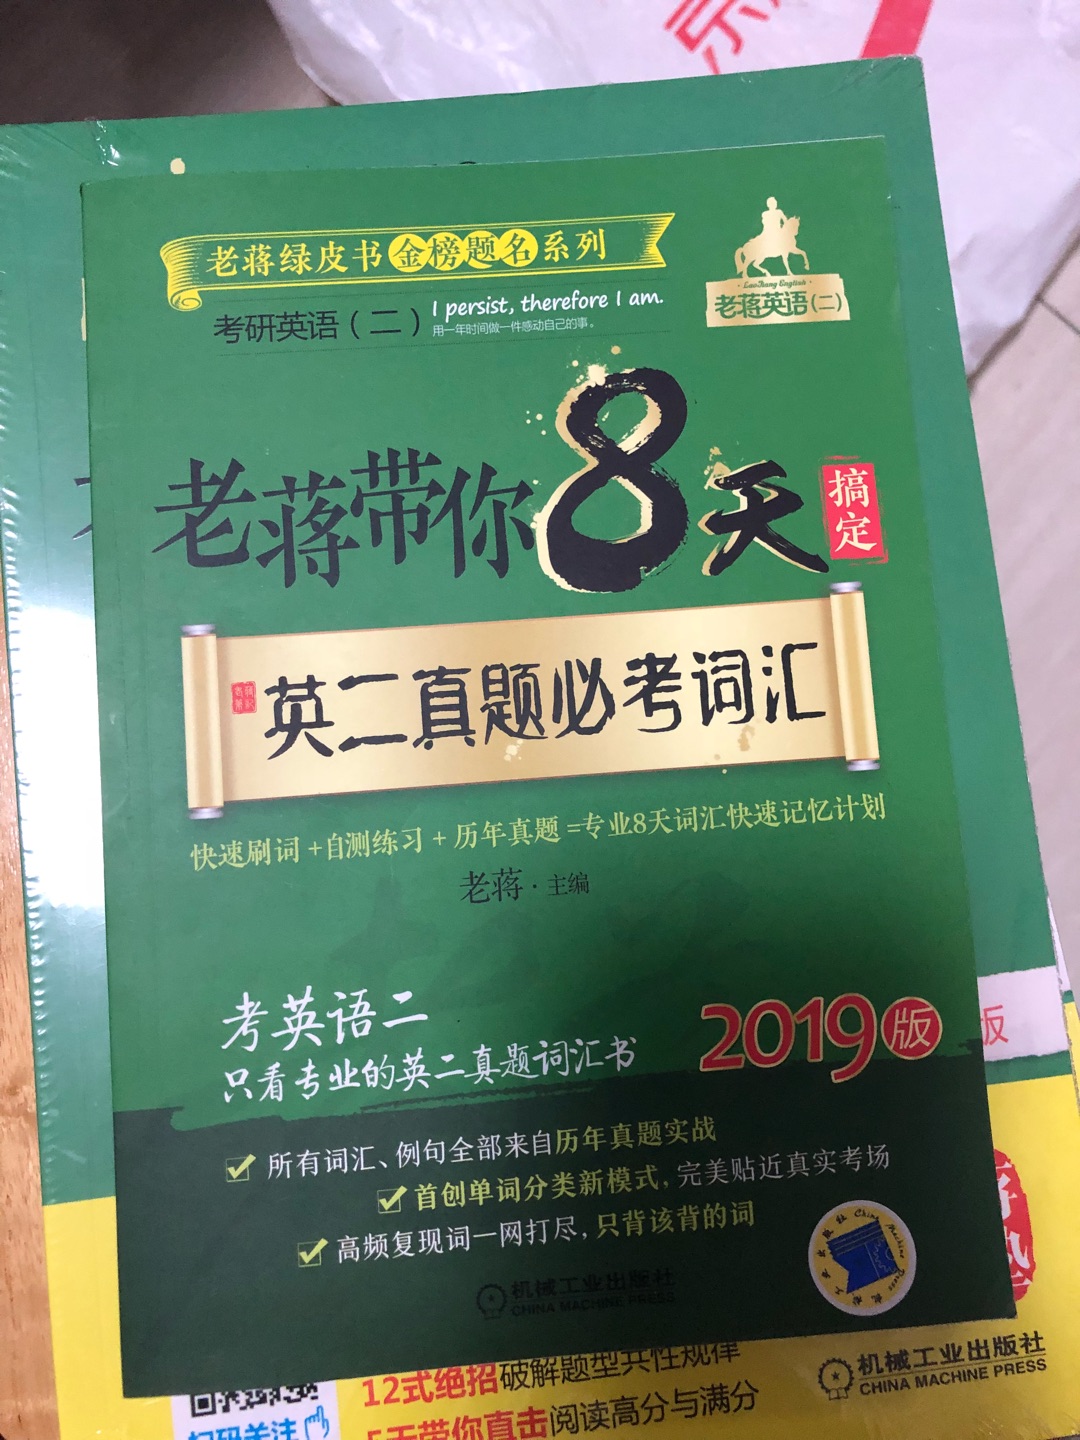 包装简陋 就一个快递袋 问题是省外发到广州舟车劳顿 书本还是会不堪重负 卷卷曲曲了 这本书偏小笨了